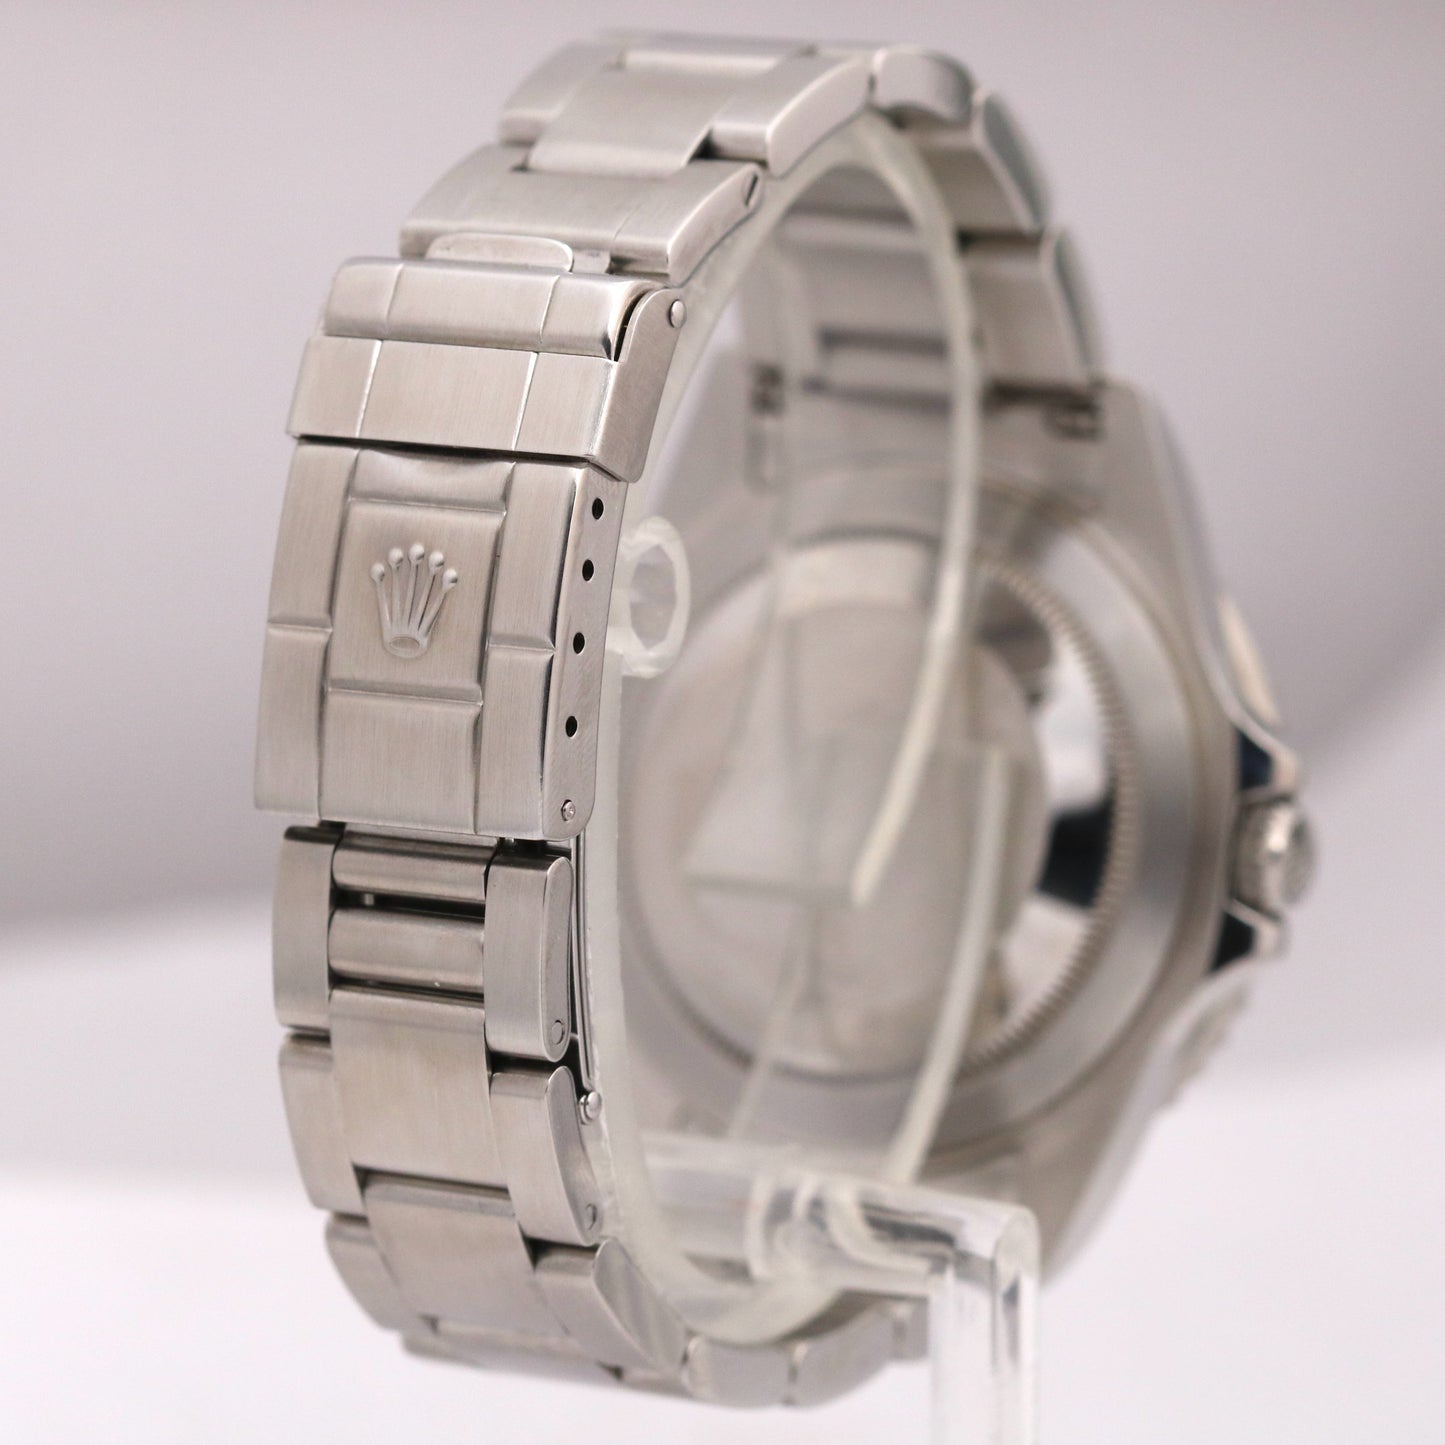 MINT Rolex GMT-Master II 40mm NO HOLES 16710 Black Red COKE Bezel Steel Watch